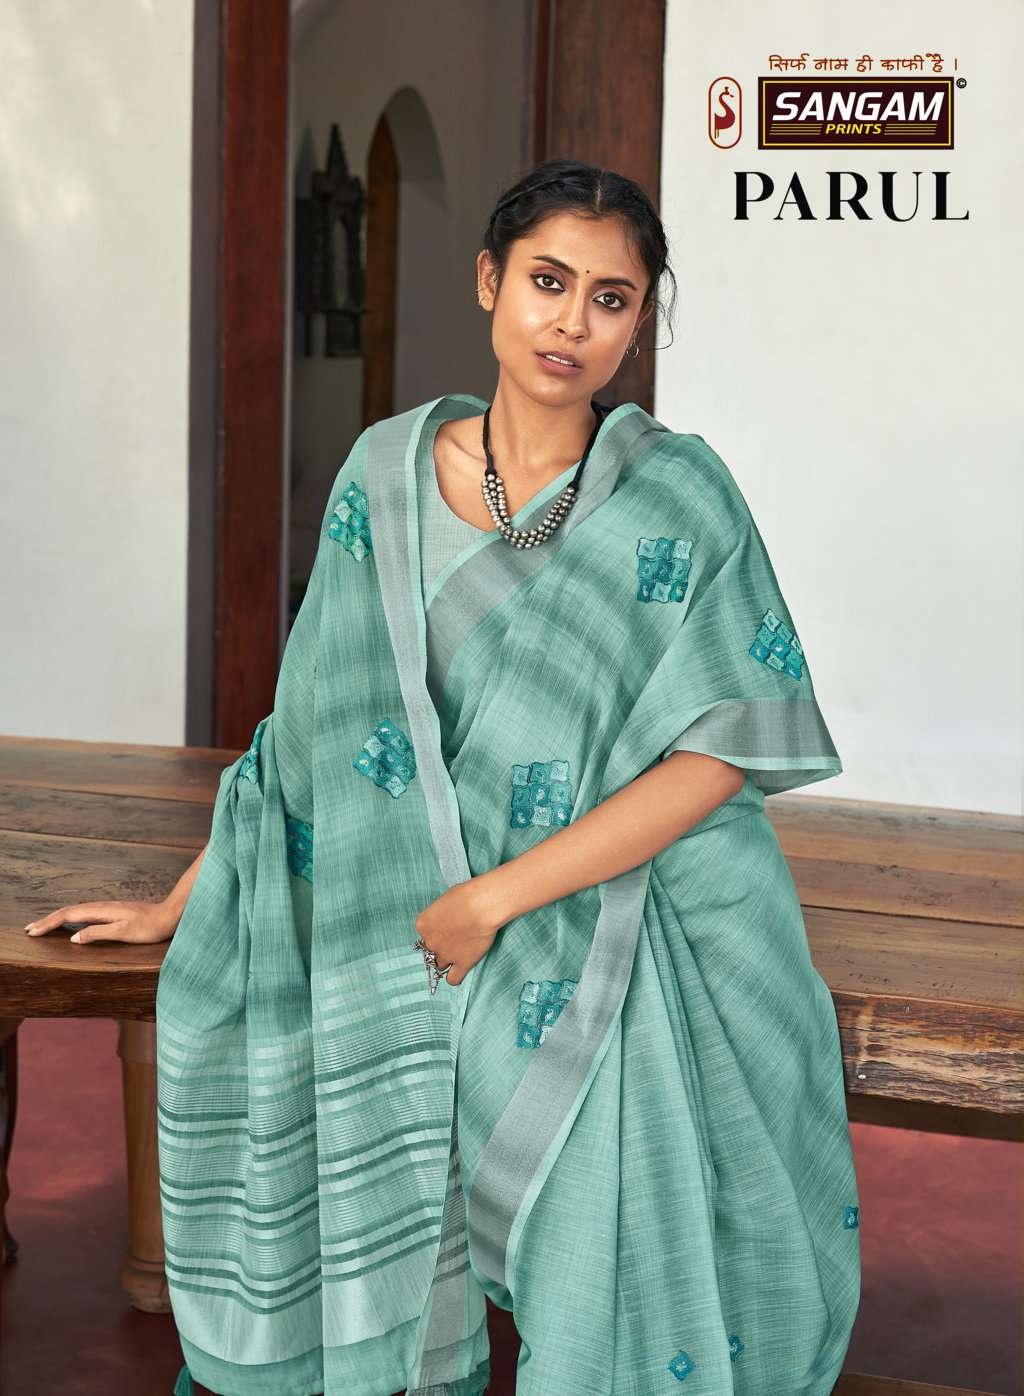 sangam prints parul linen cotton embroidery saris wholesaler